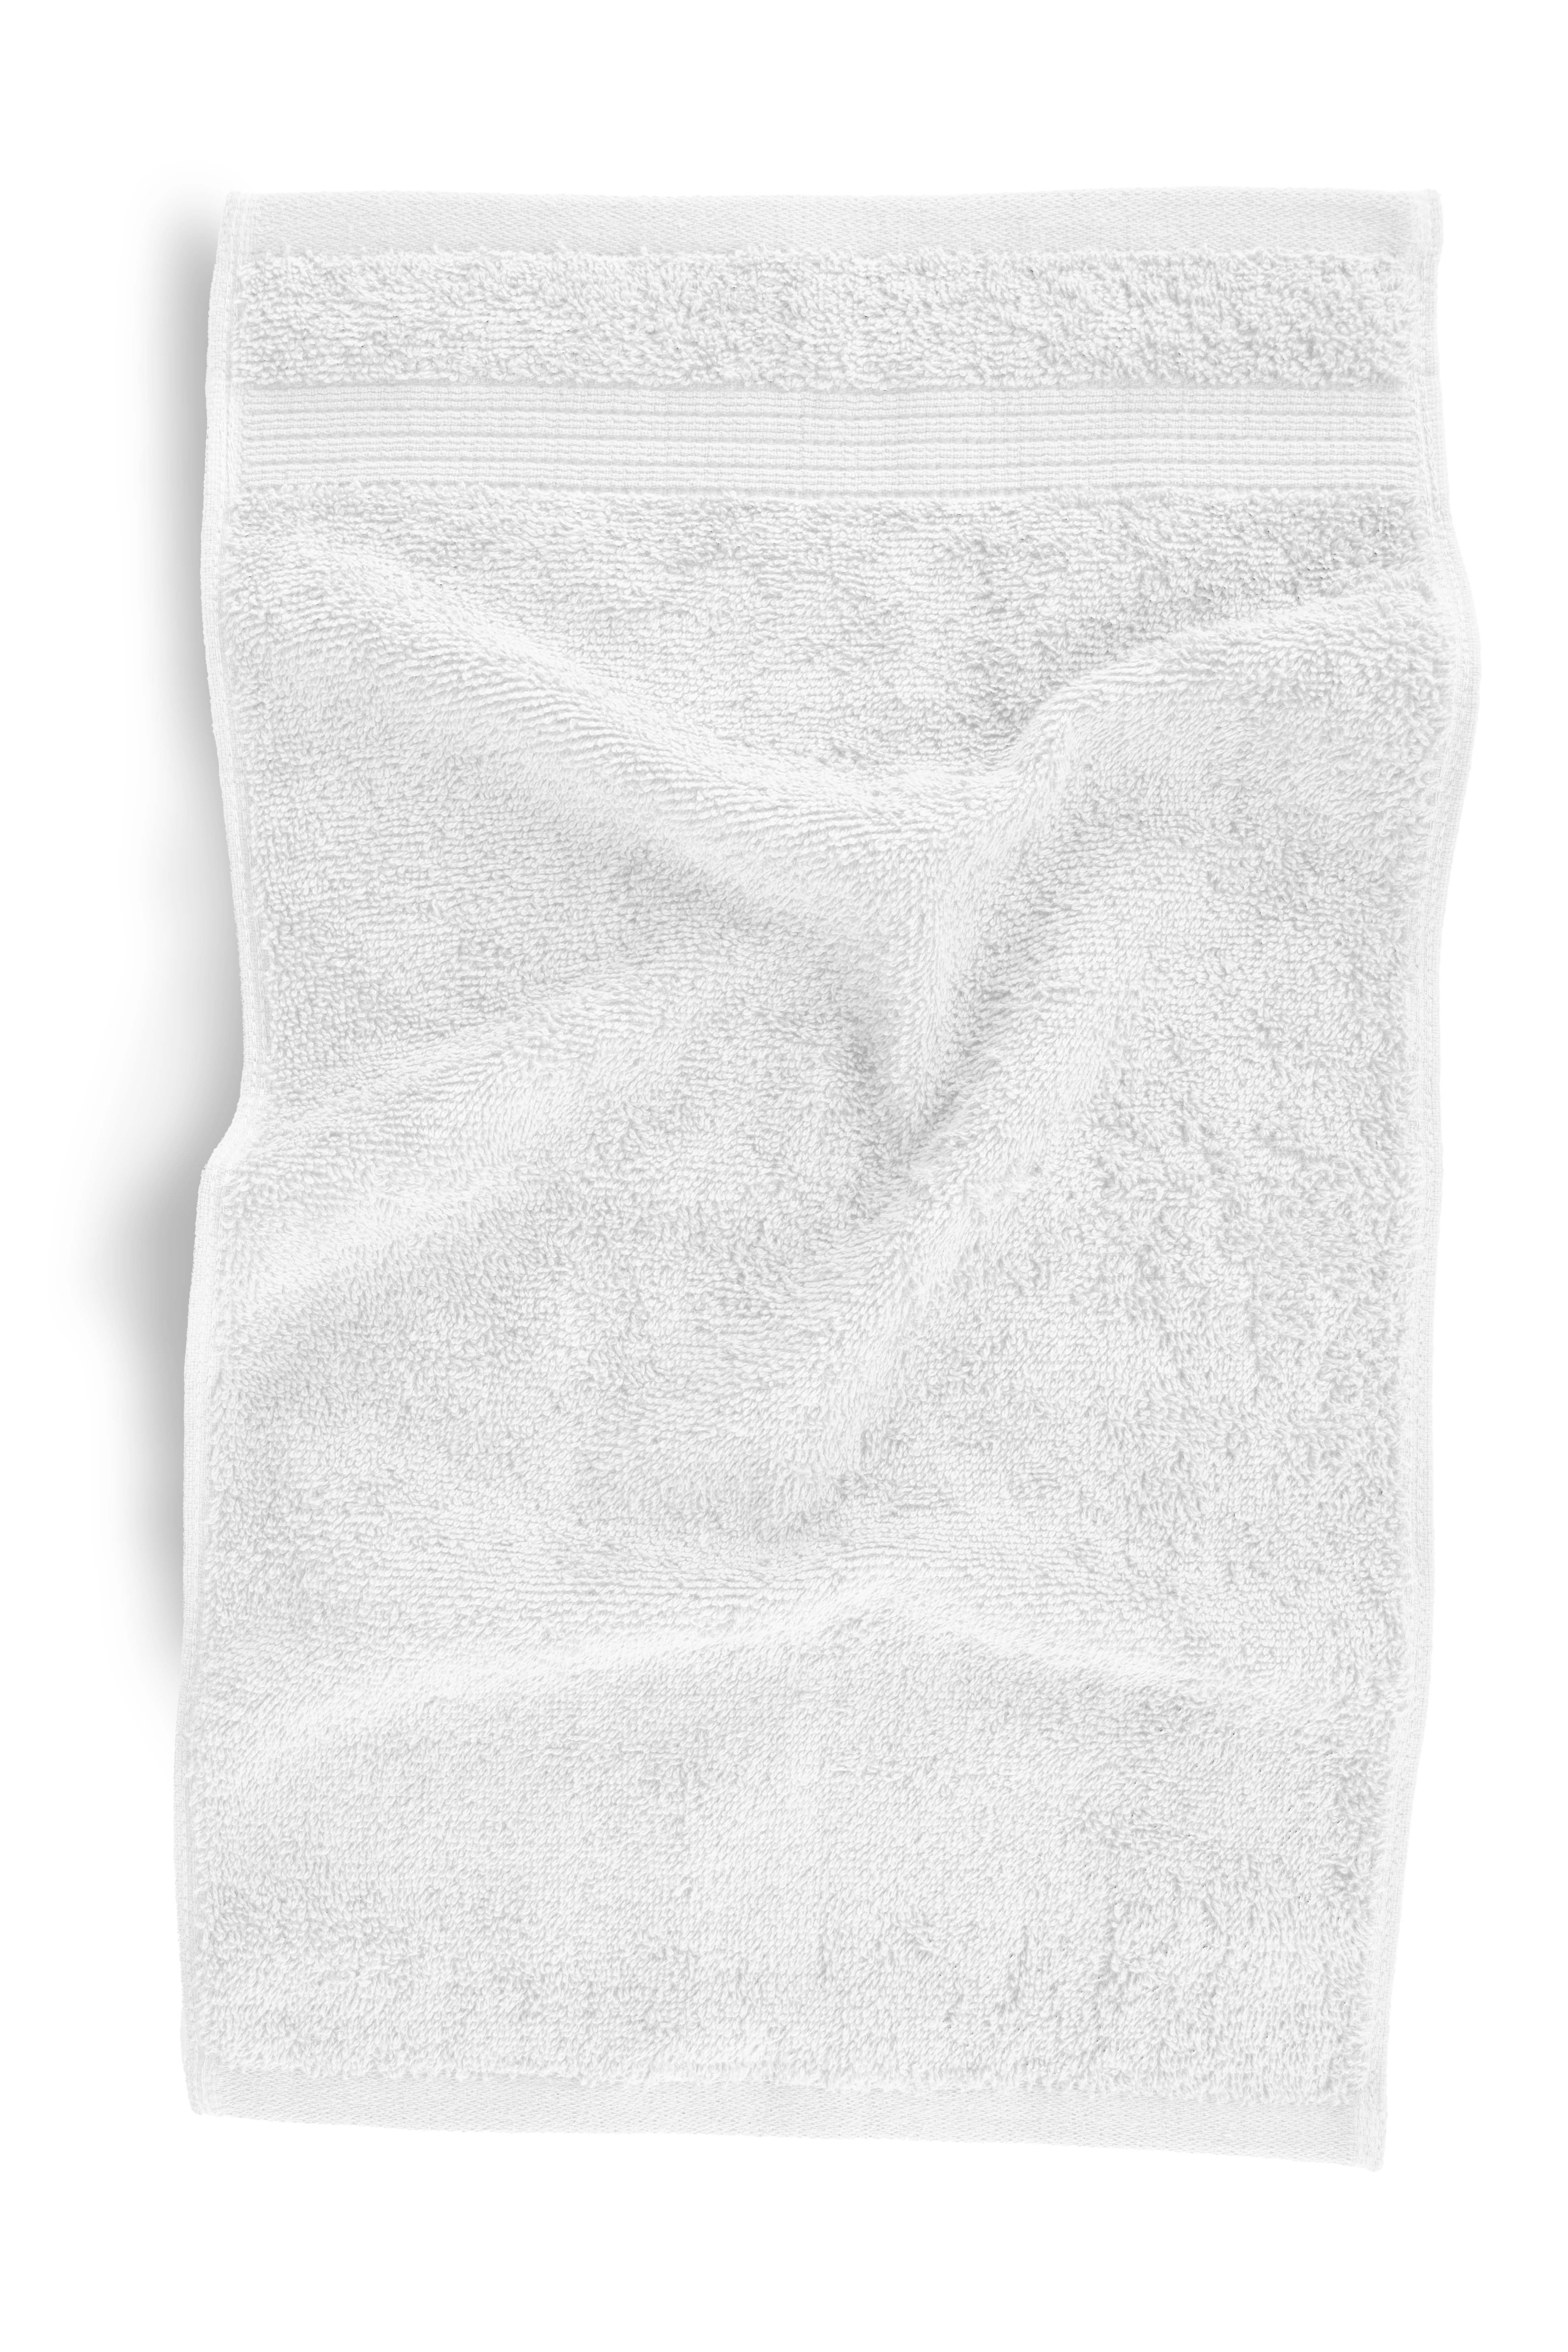 Guest towel EDEN 30x50cm, star white set/2